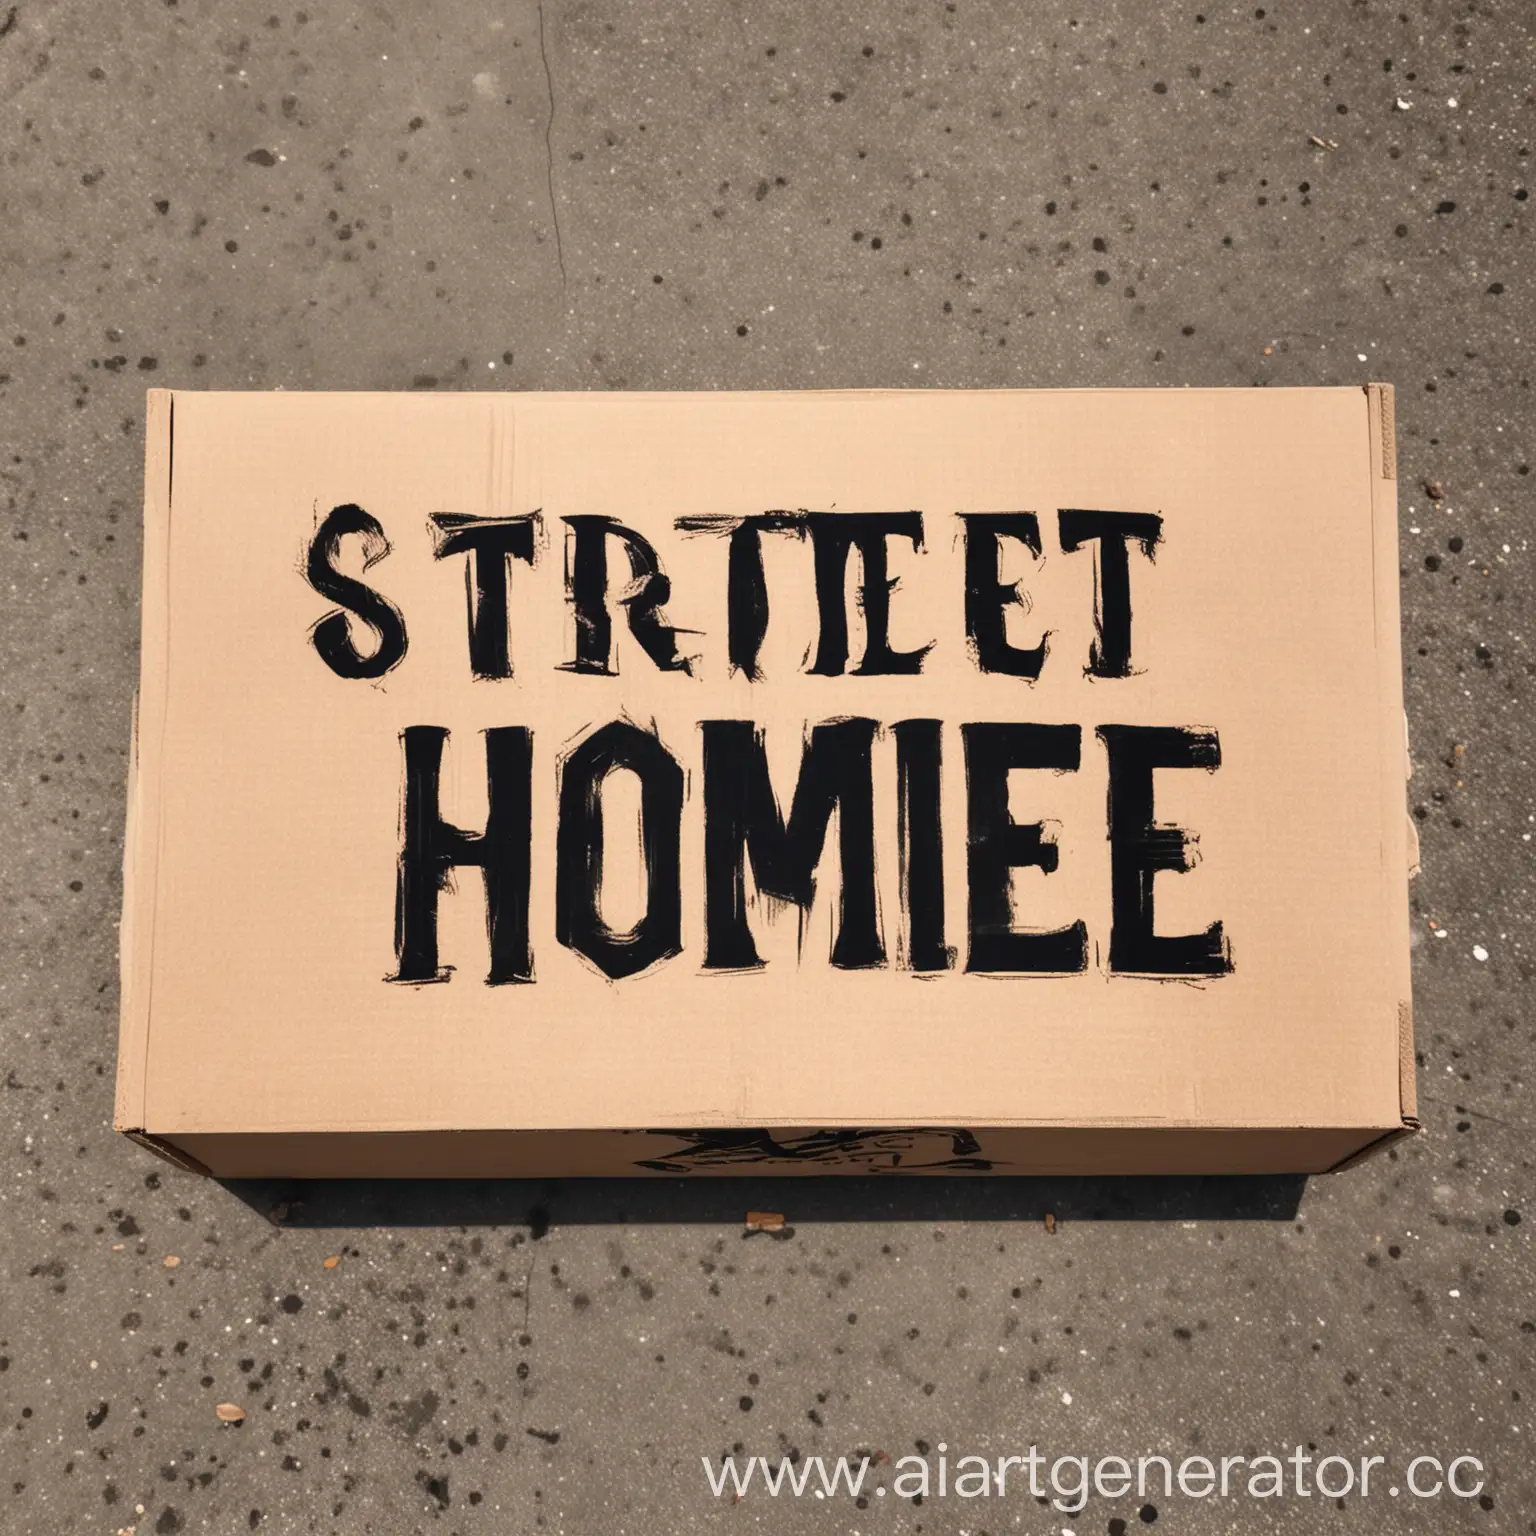 Urban-Graffiti-Art-Street-Homie-Tagged-Box